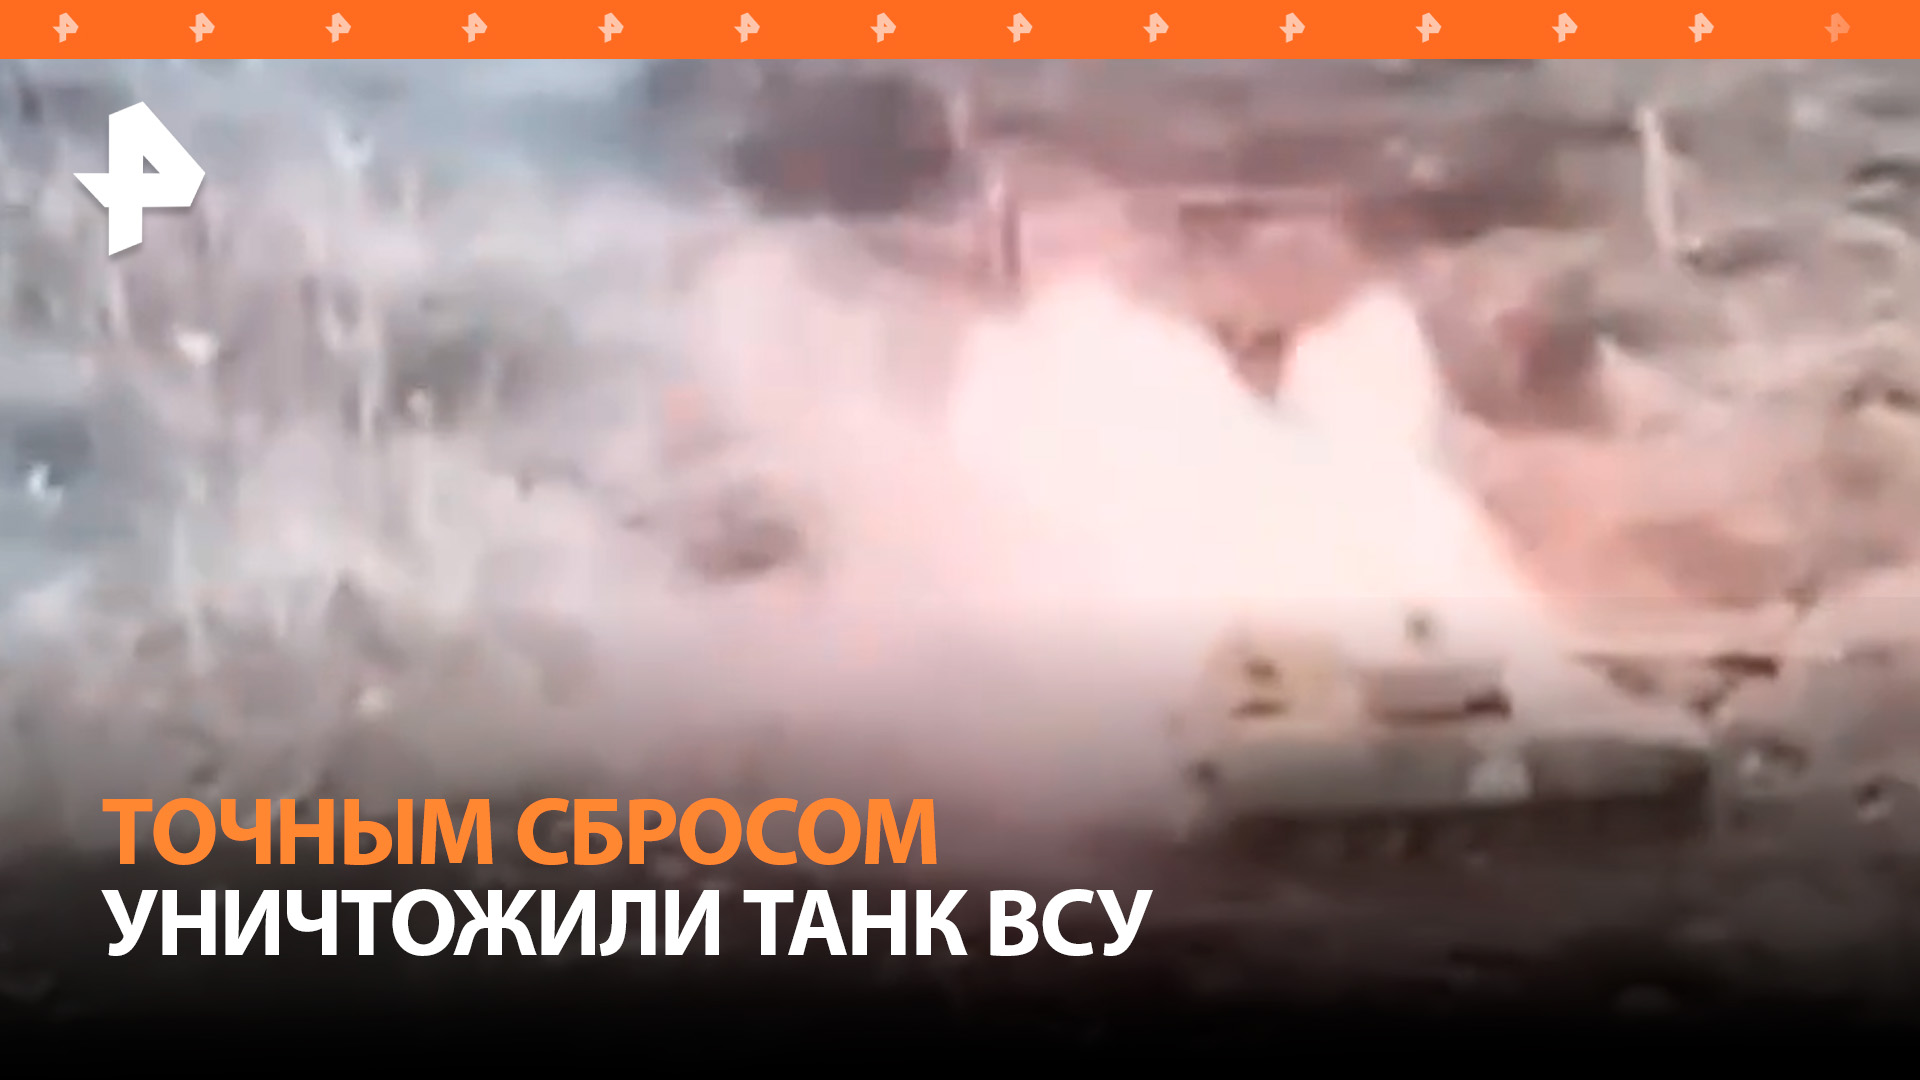 Российские войска уничтожили танк ВСУ сбросом снаряда с БПЛА / РЕН Новости